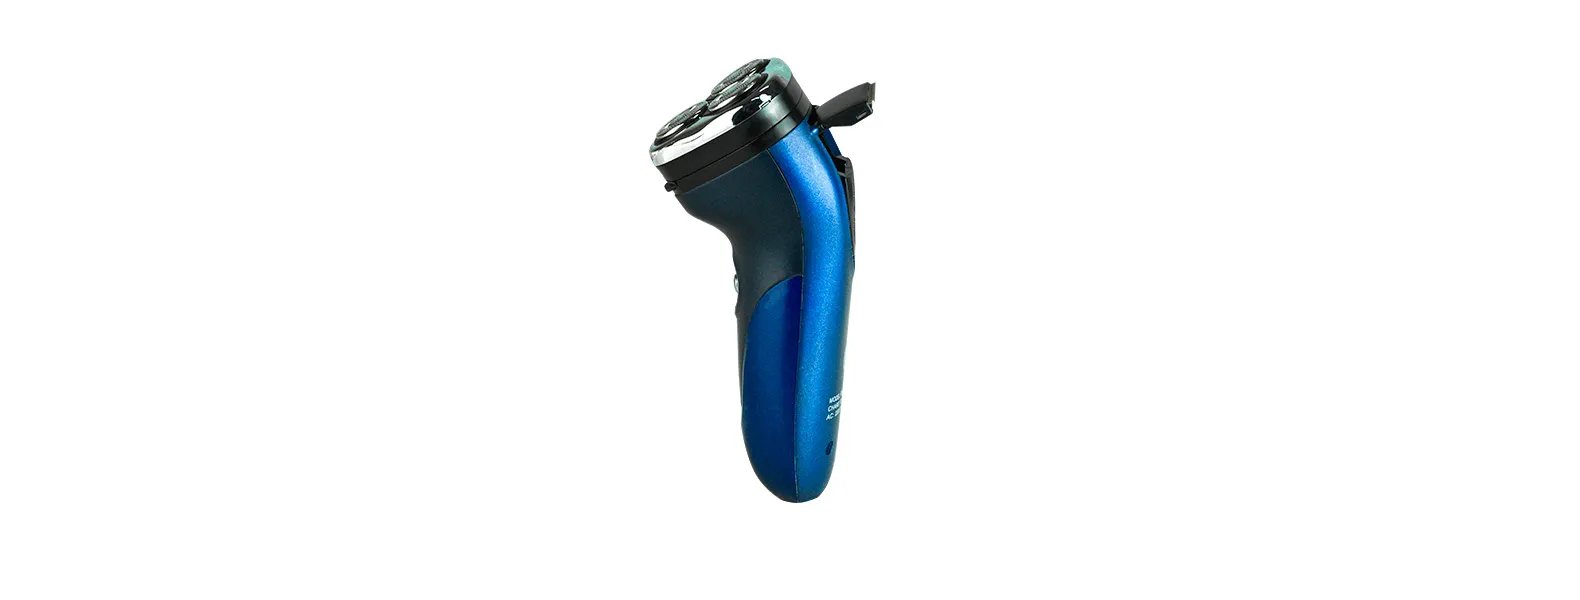 Kit barbeador, depilador e aparador.Composto por depilador e aparador à pilha (Não inclusas) e barbeador à bateria (Carregador 220v).